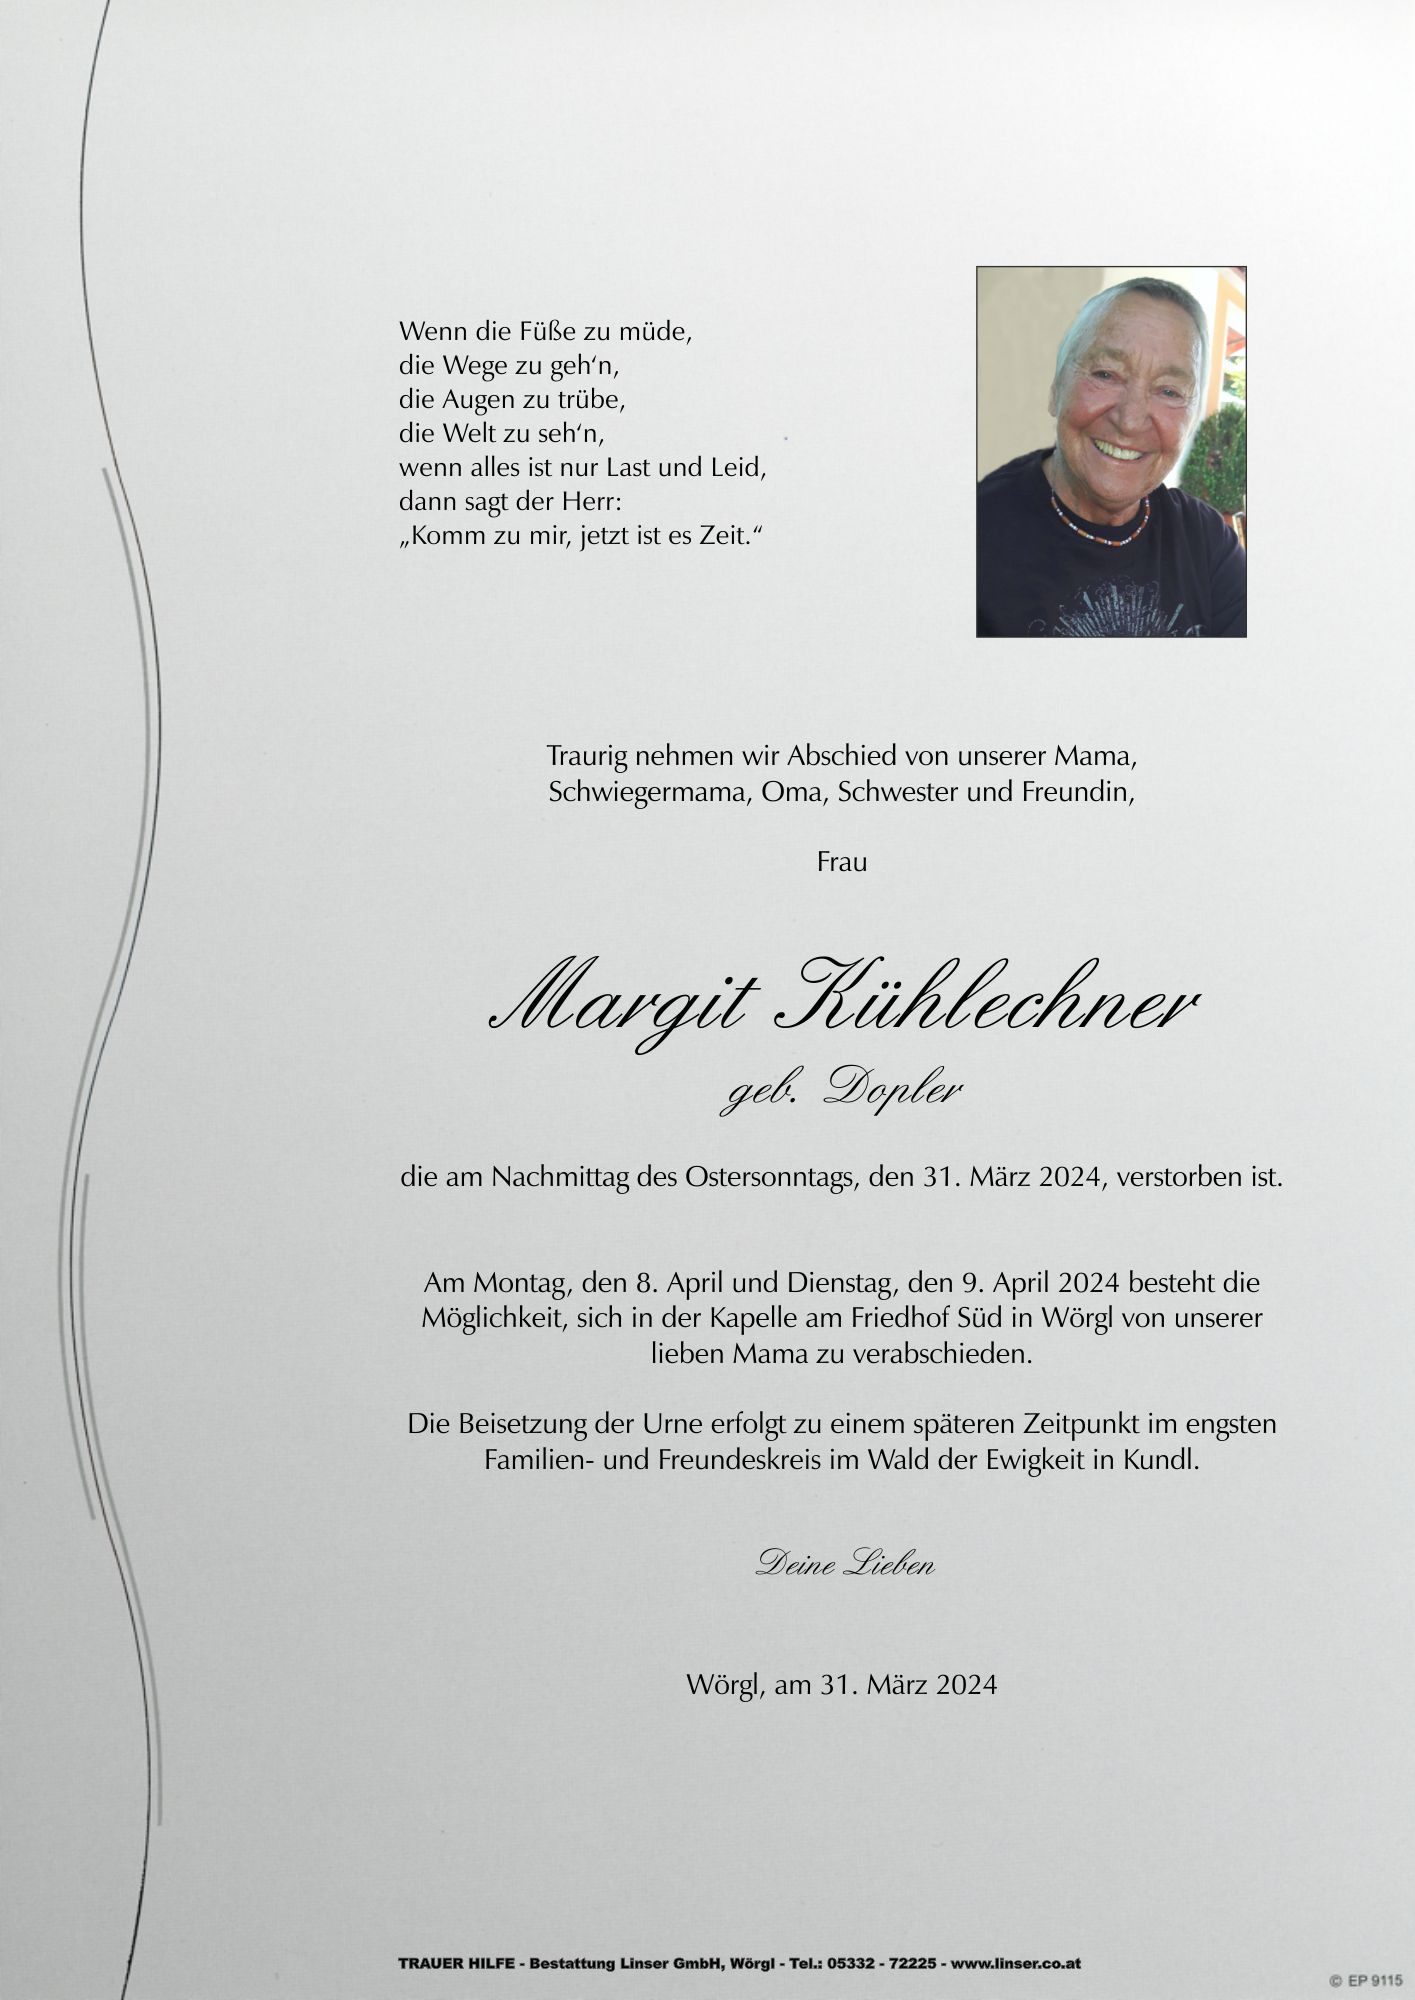 Margit Kühlechner